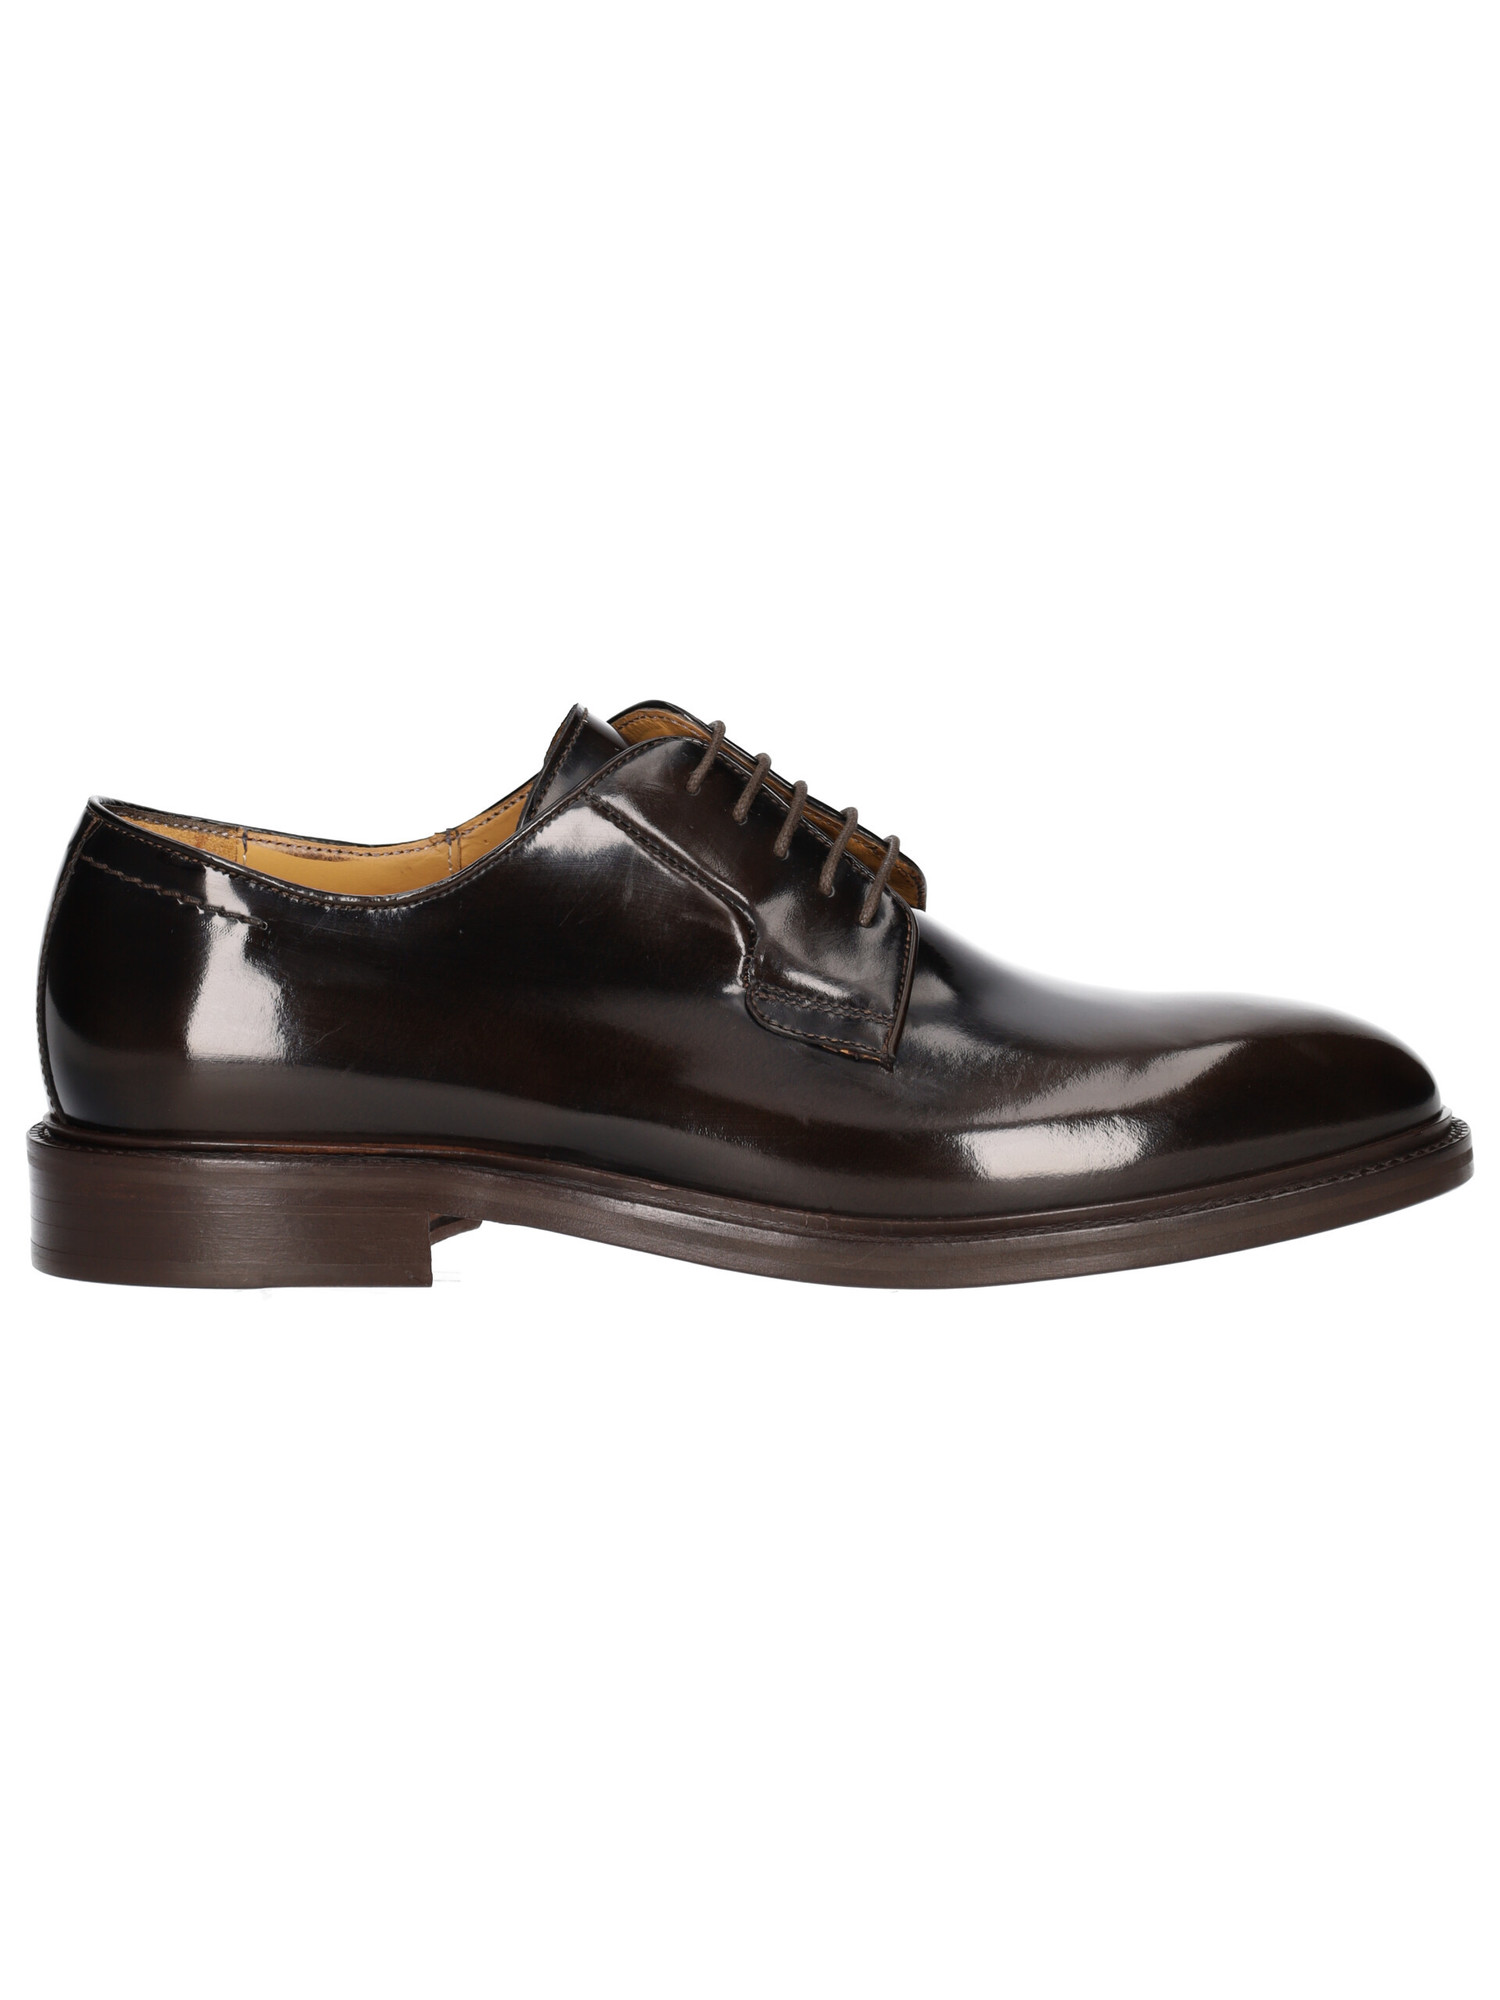 scarpa-elegante-mercanti-fiorentini-da-uomo-testa-di-moro-89b55b